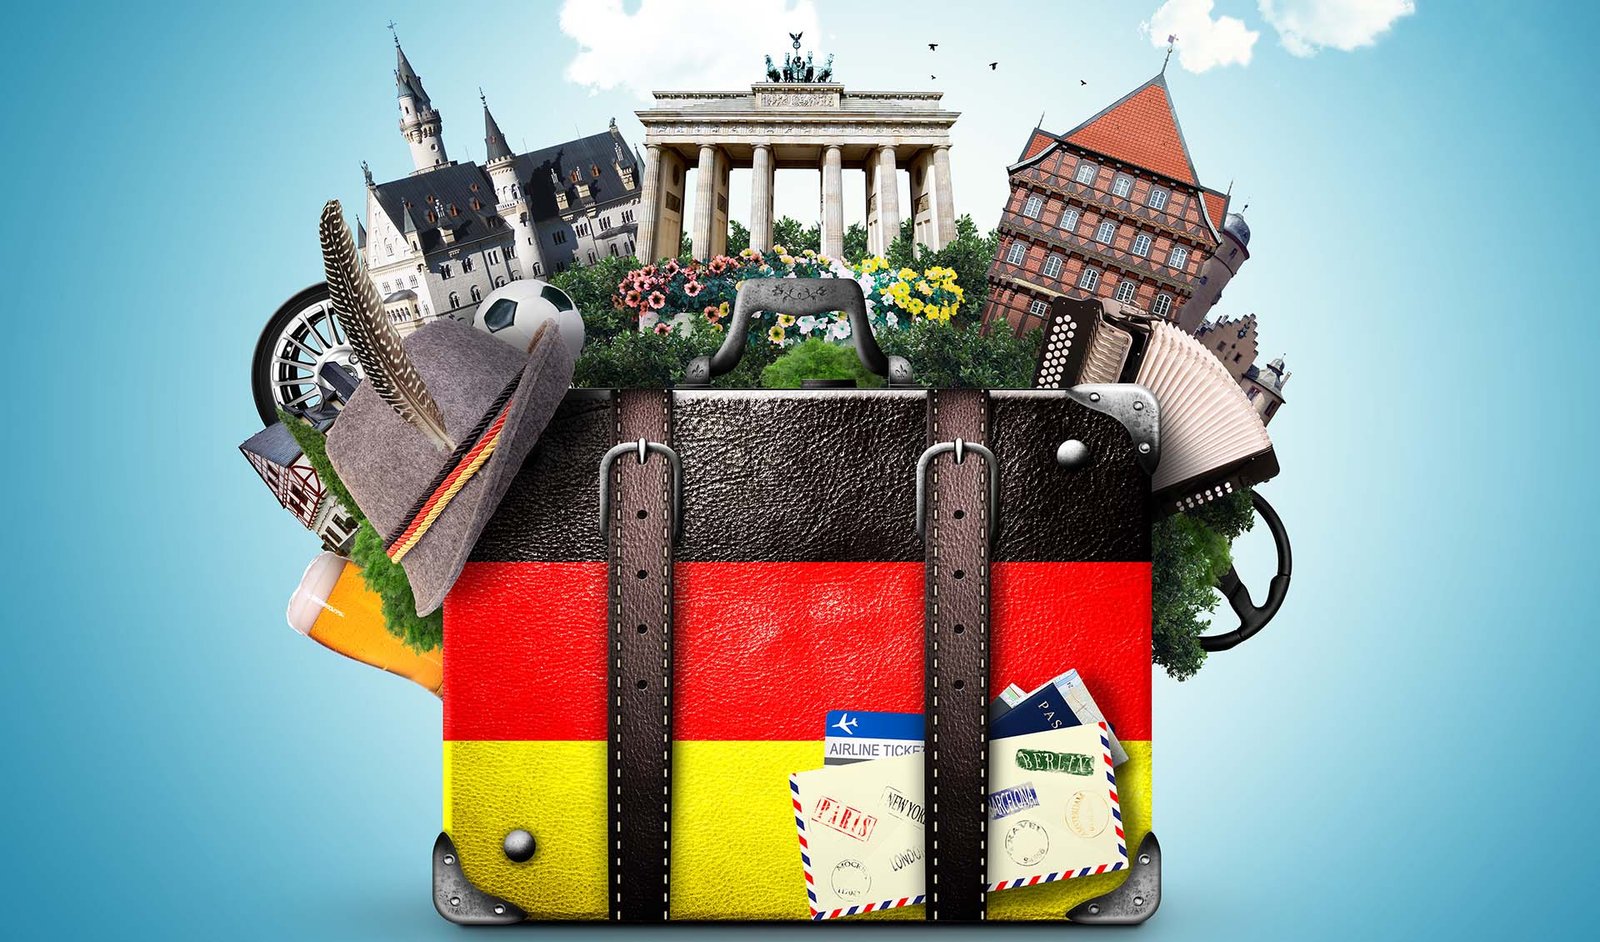 انشطة يمكن ممارستها في ألمانيا وأهم الأماكن السياحية